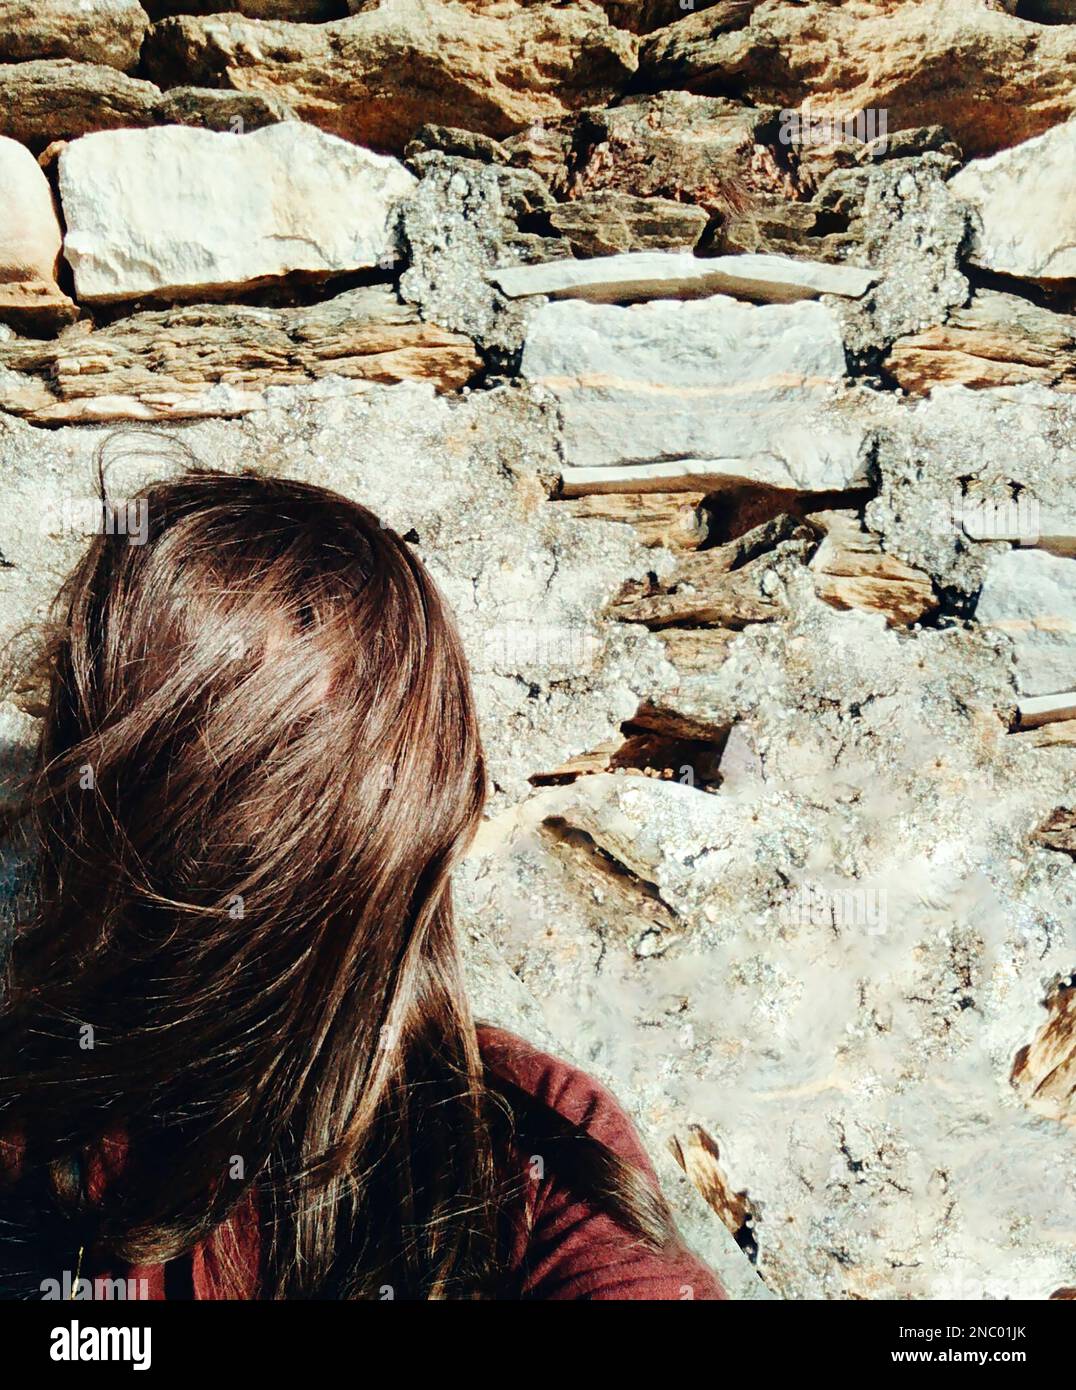 Une femme se tient sur un mur rocailleux, les cheveux couvrant ou cachant son visage Banque D'Images